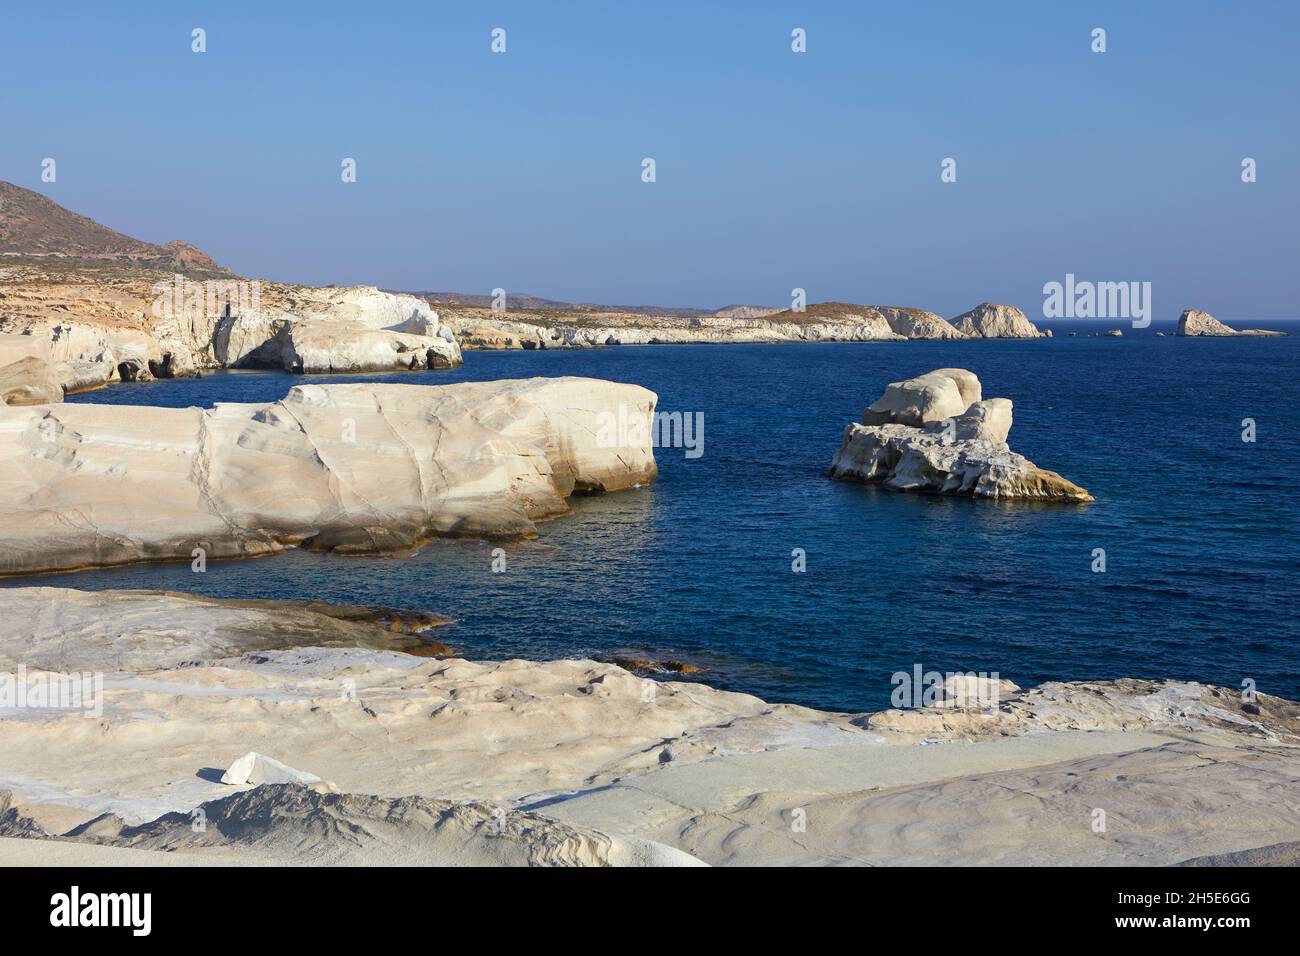 The white cliffs of Sarakiniko Beach, Milos, Greece Stock Photo